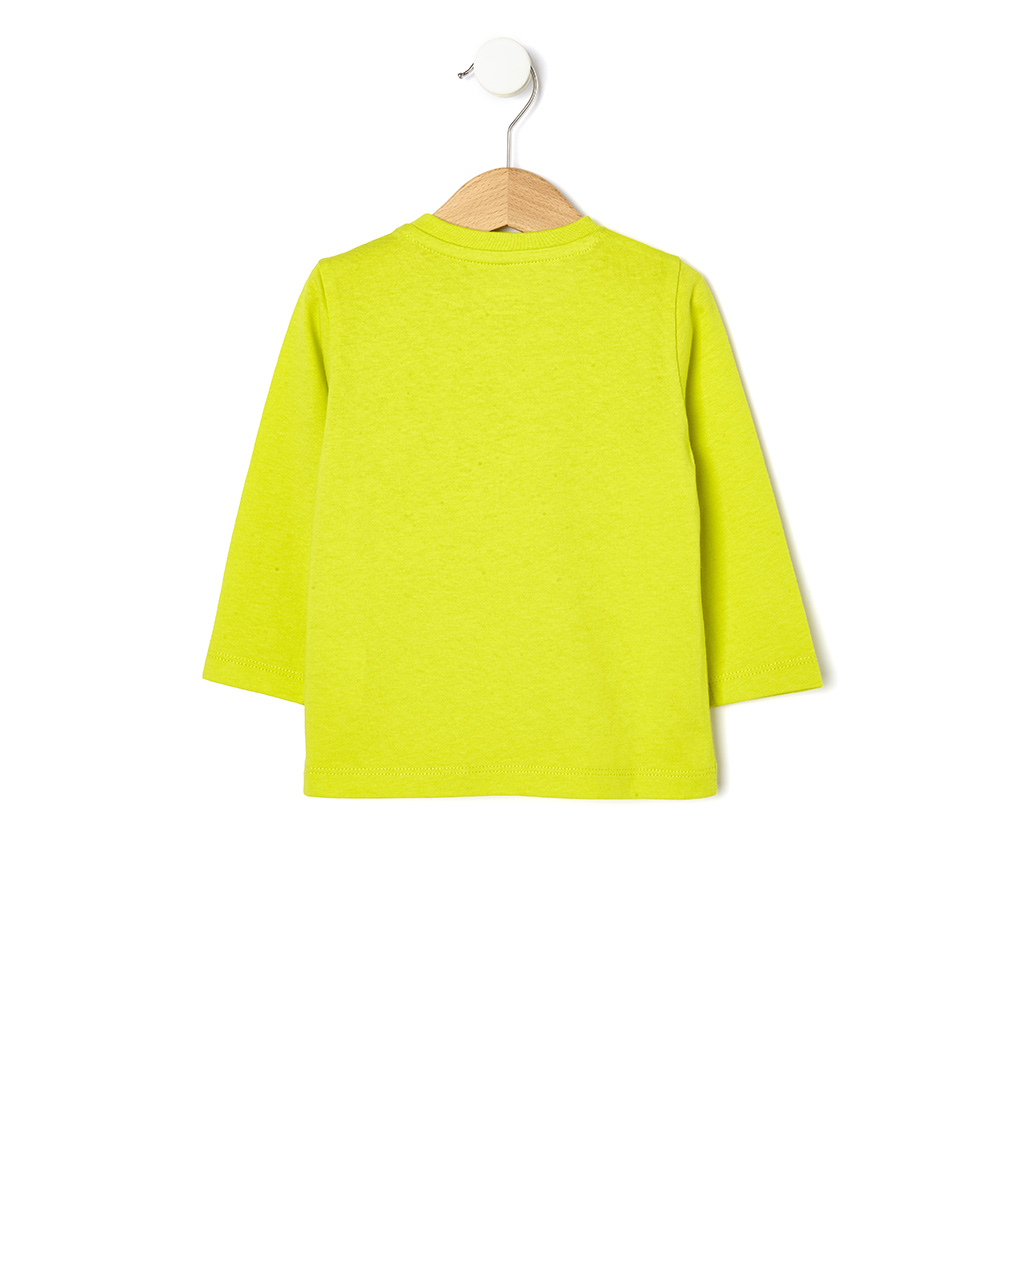 μπλούζα με στάμπα κίτρινη για αγόρι - Prénatal